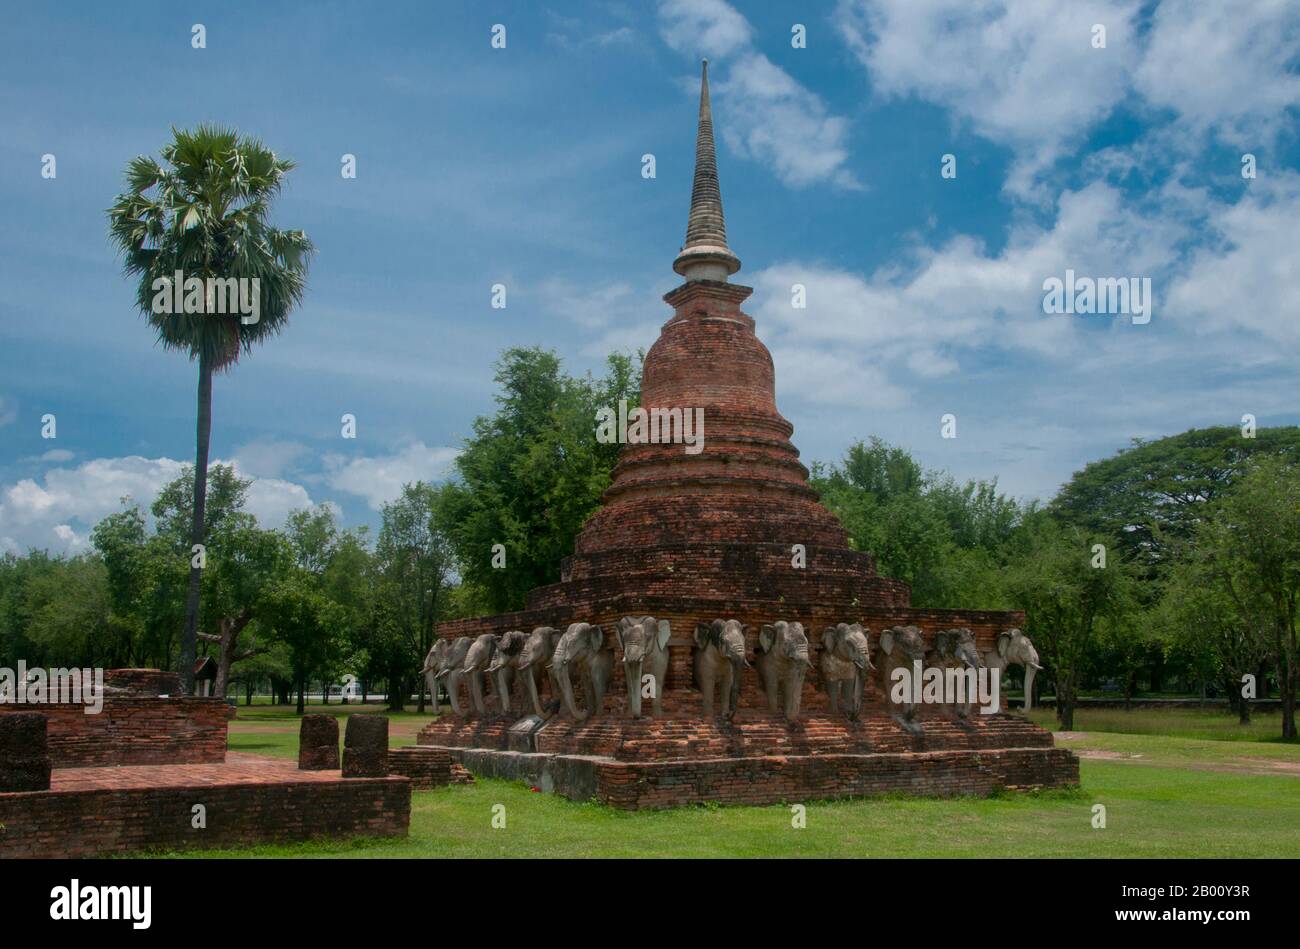 Thailandia: Wat Sorasak, Parco storico di Sukhothai. Wat Sorasak fu costruito all'inizio del XV secolo ed è rinomato per i 24 elefanti che circondano la base dei chedi in stile Sri Lanka. Sukhothai, che letteralmente significa "Alba della felicità", fu la capitale del regno di Sukhothai e fu fondata nel 1238. Fu la capitale dell'Impero Tailandese per circa 140 anni. Foto Stock